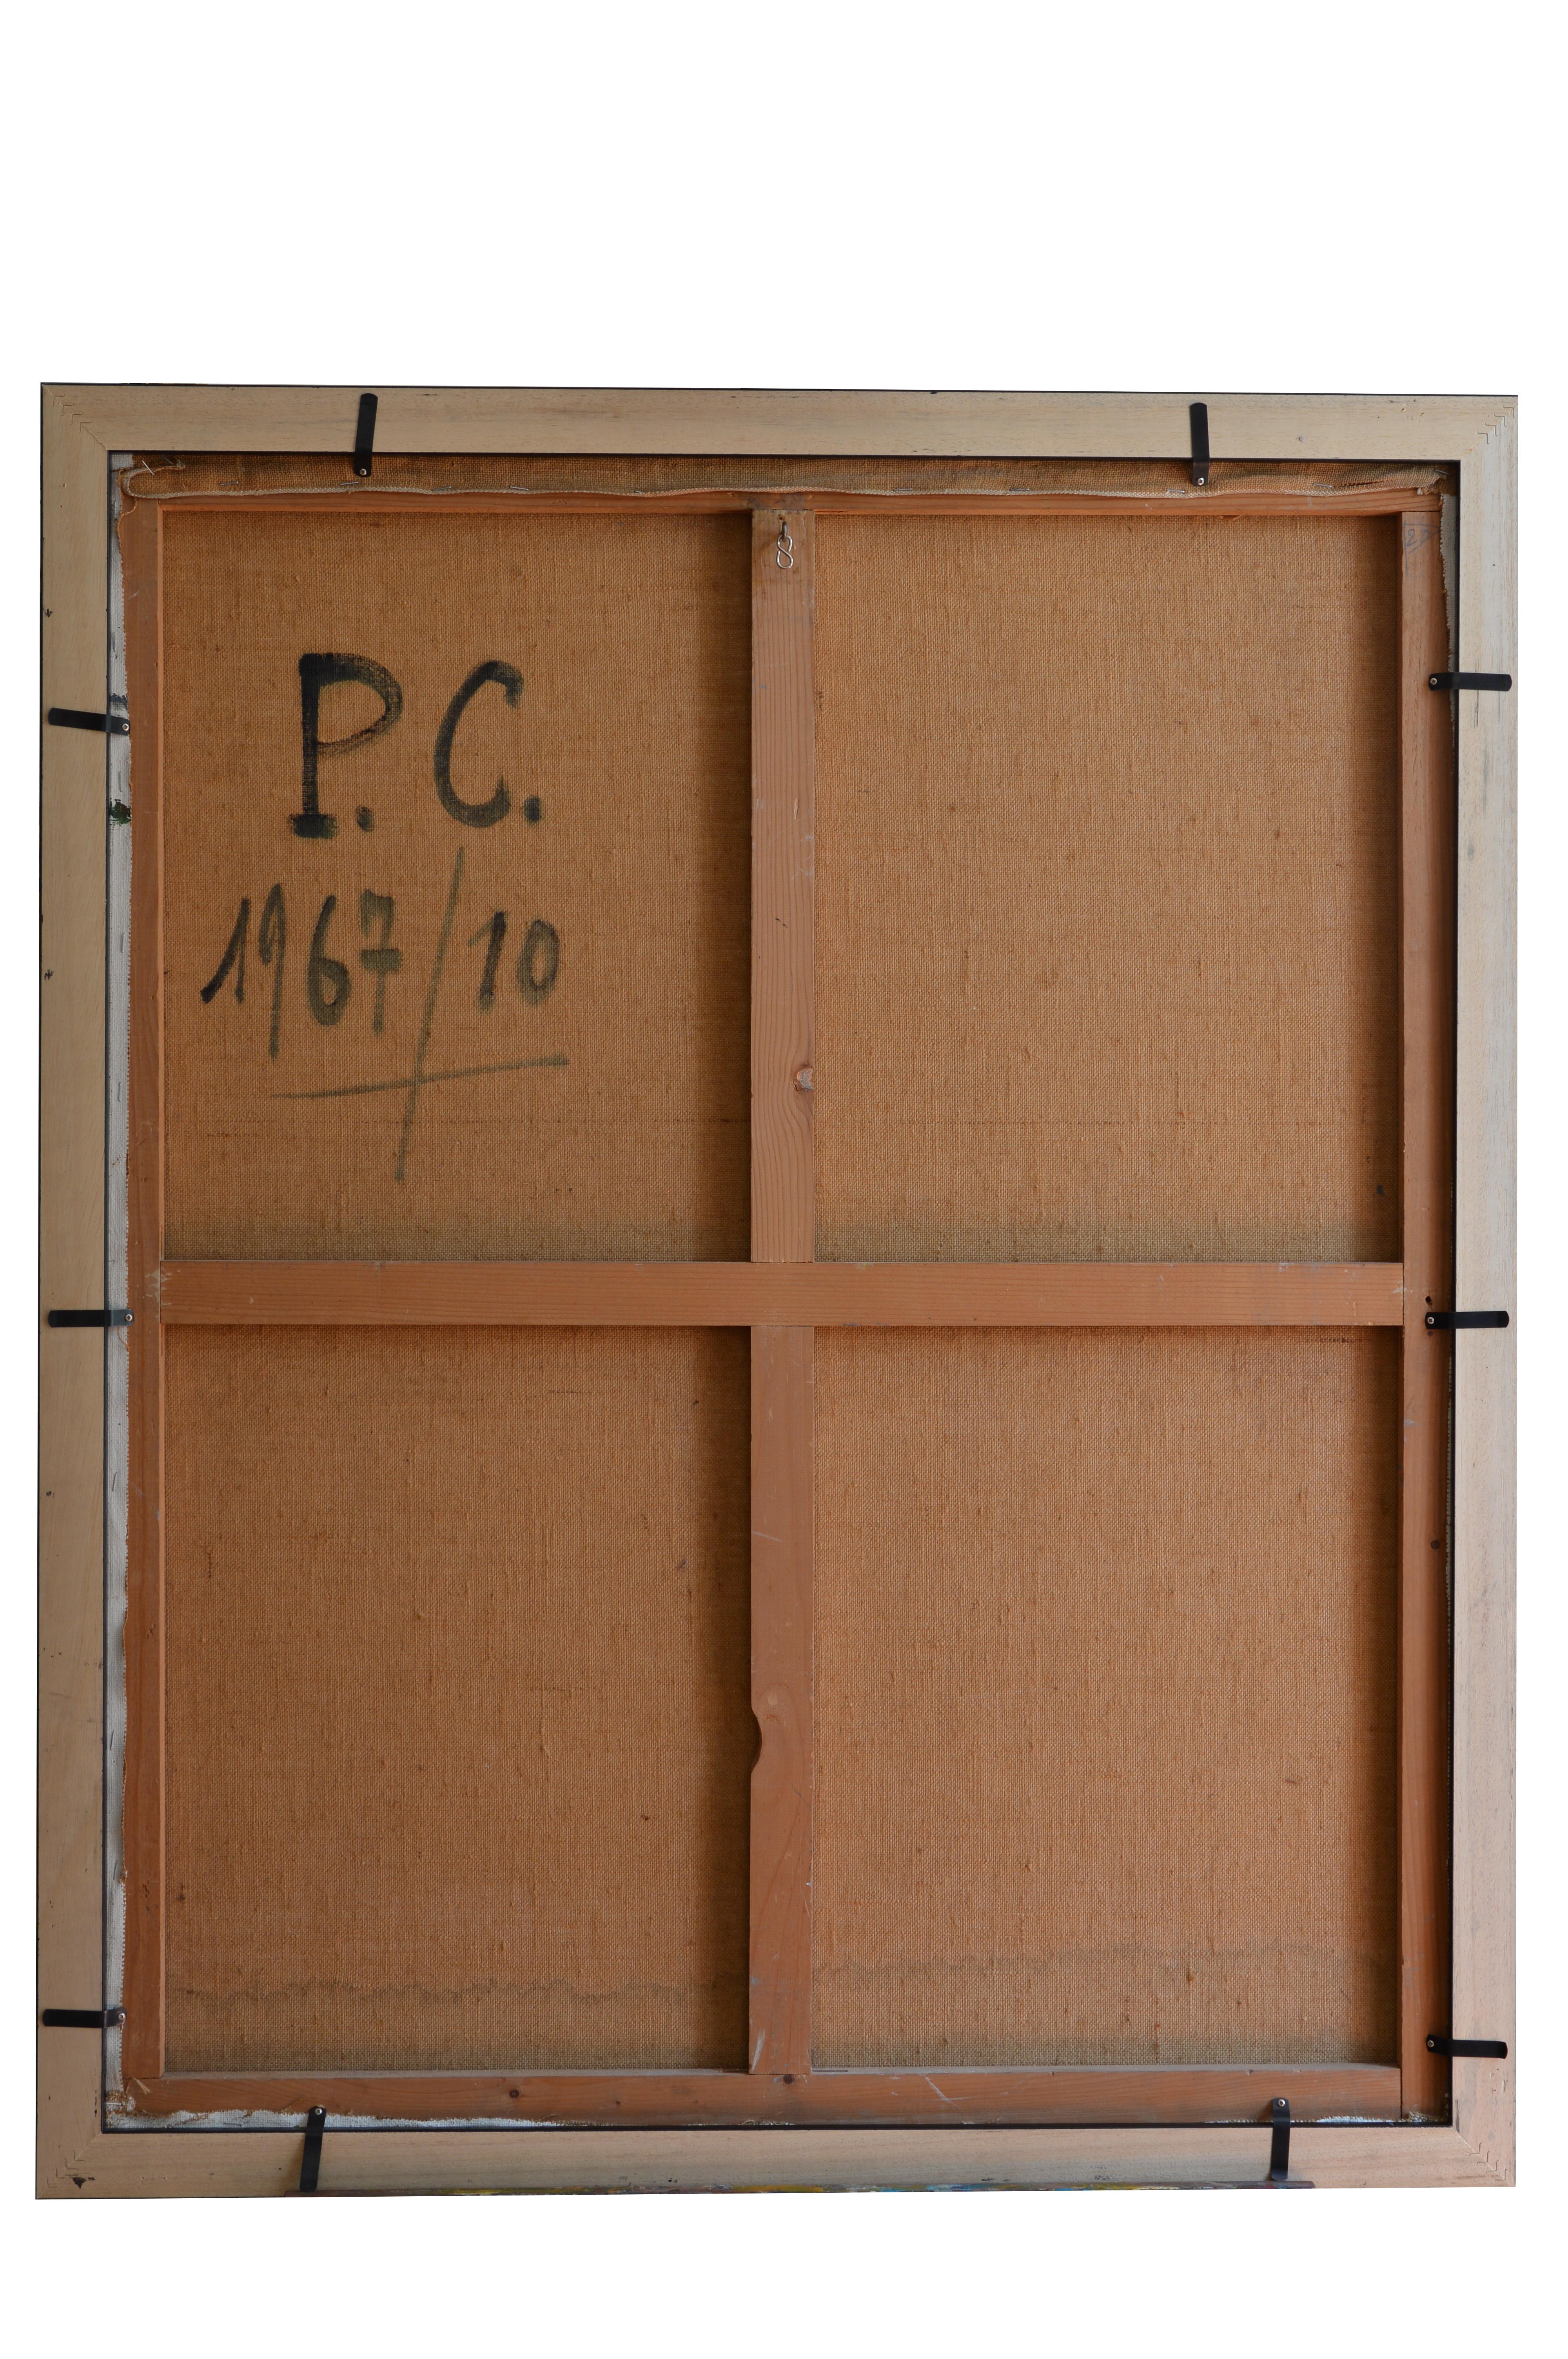 Öl auf Leinwand von Paul Clement (1906-), Frankreich, 1967. Bories-en-Provence bei Gordes. Maße: mit Rahmen: 106x87 cm - 41.7x34.25 inches, ohne Rahmen: 100x81 cm - 39.4x31.9 inches, Format 40F. Signiert unten links 